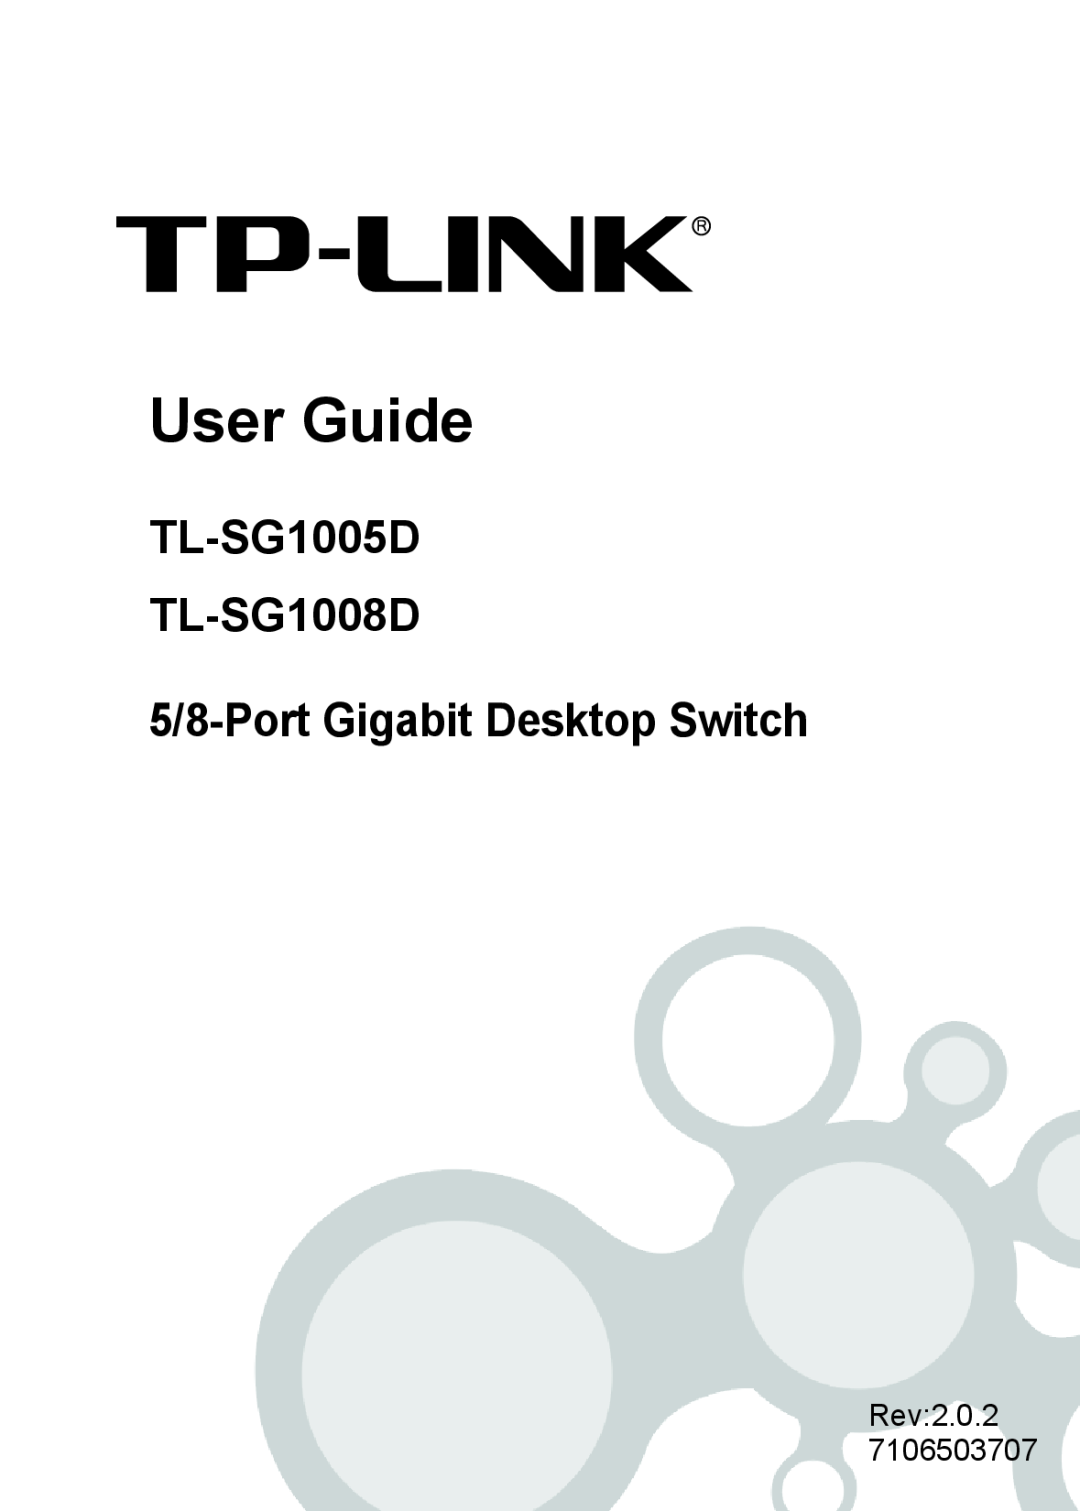 TP-Link manual User Guide, TL-SG1005D TL-SG1008D 5/8-Port Gigabit Desktop Switch 